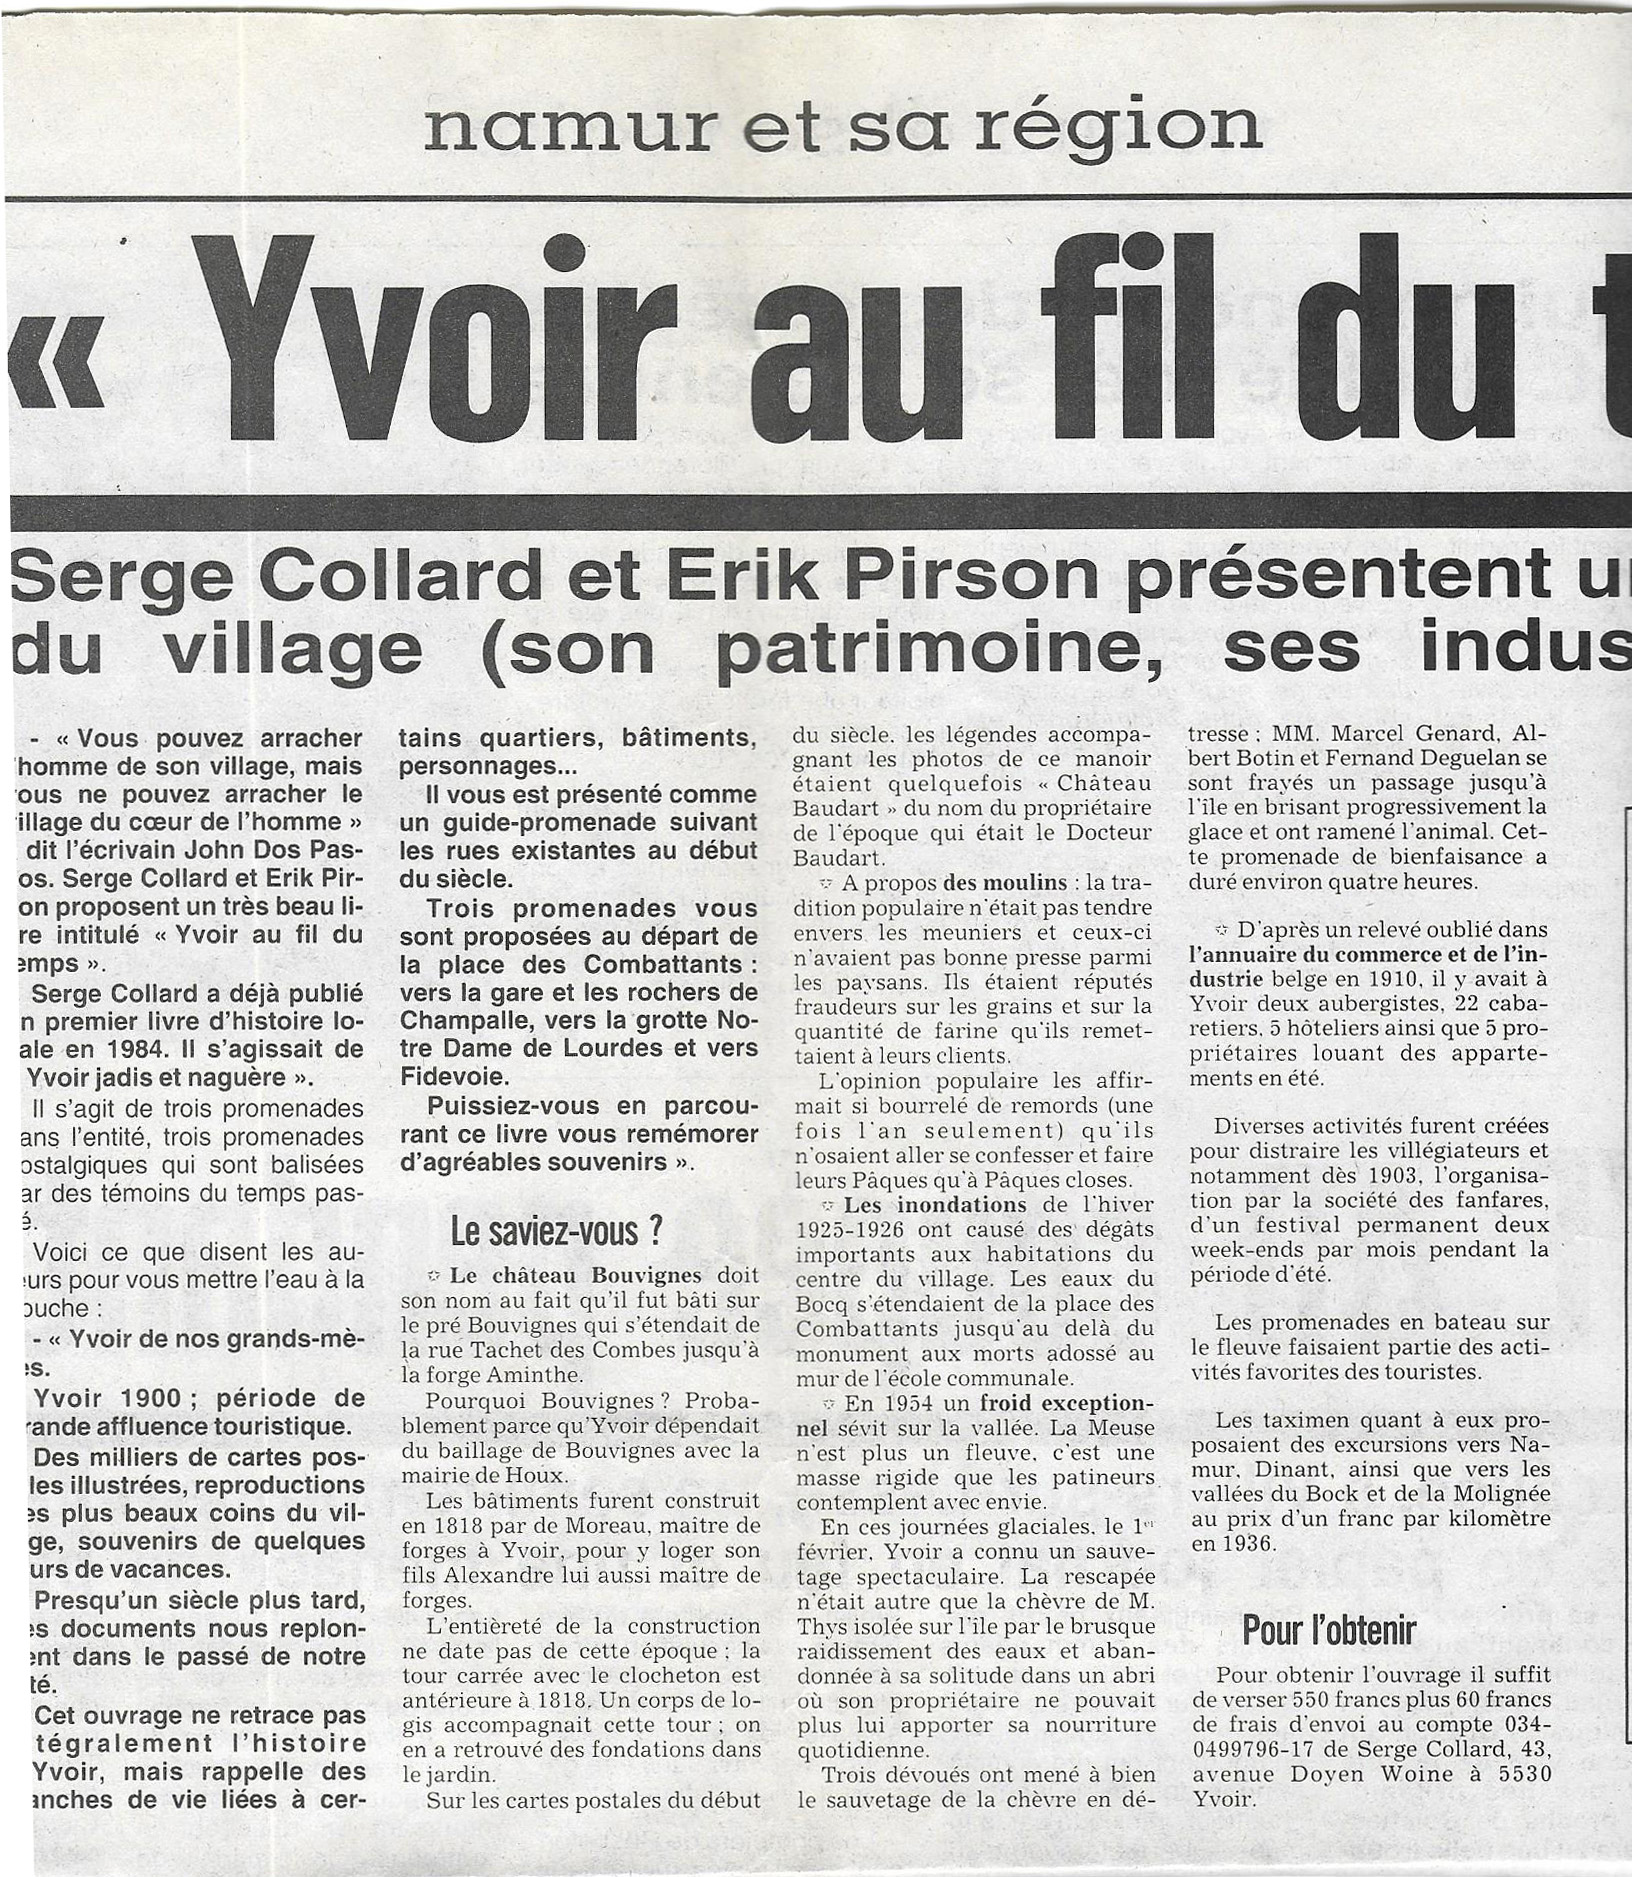 1993.1.25.1 - Yvoir au fil du temps - La Meuse.jpg